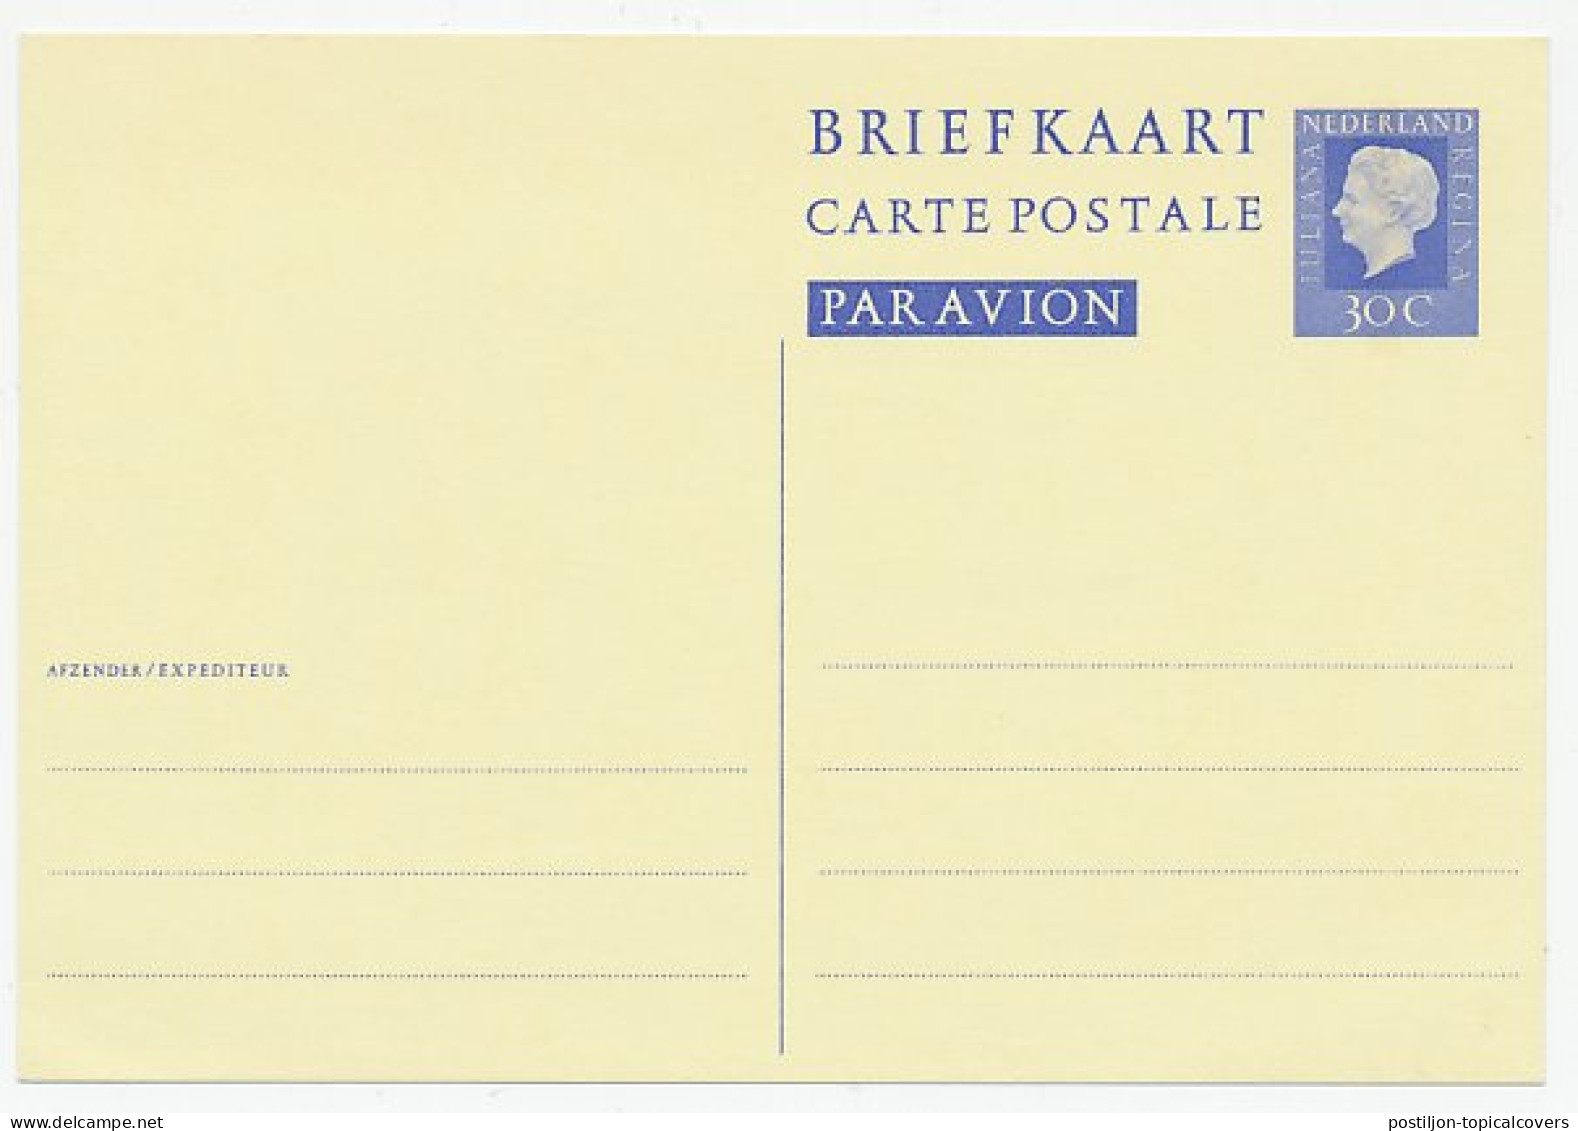 Briefkaart G. 348 - Ganzsachen